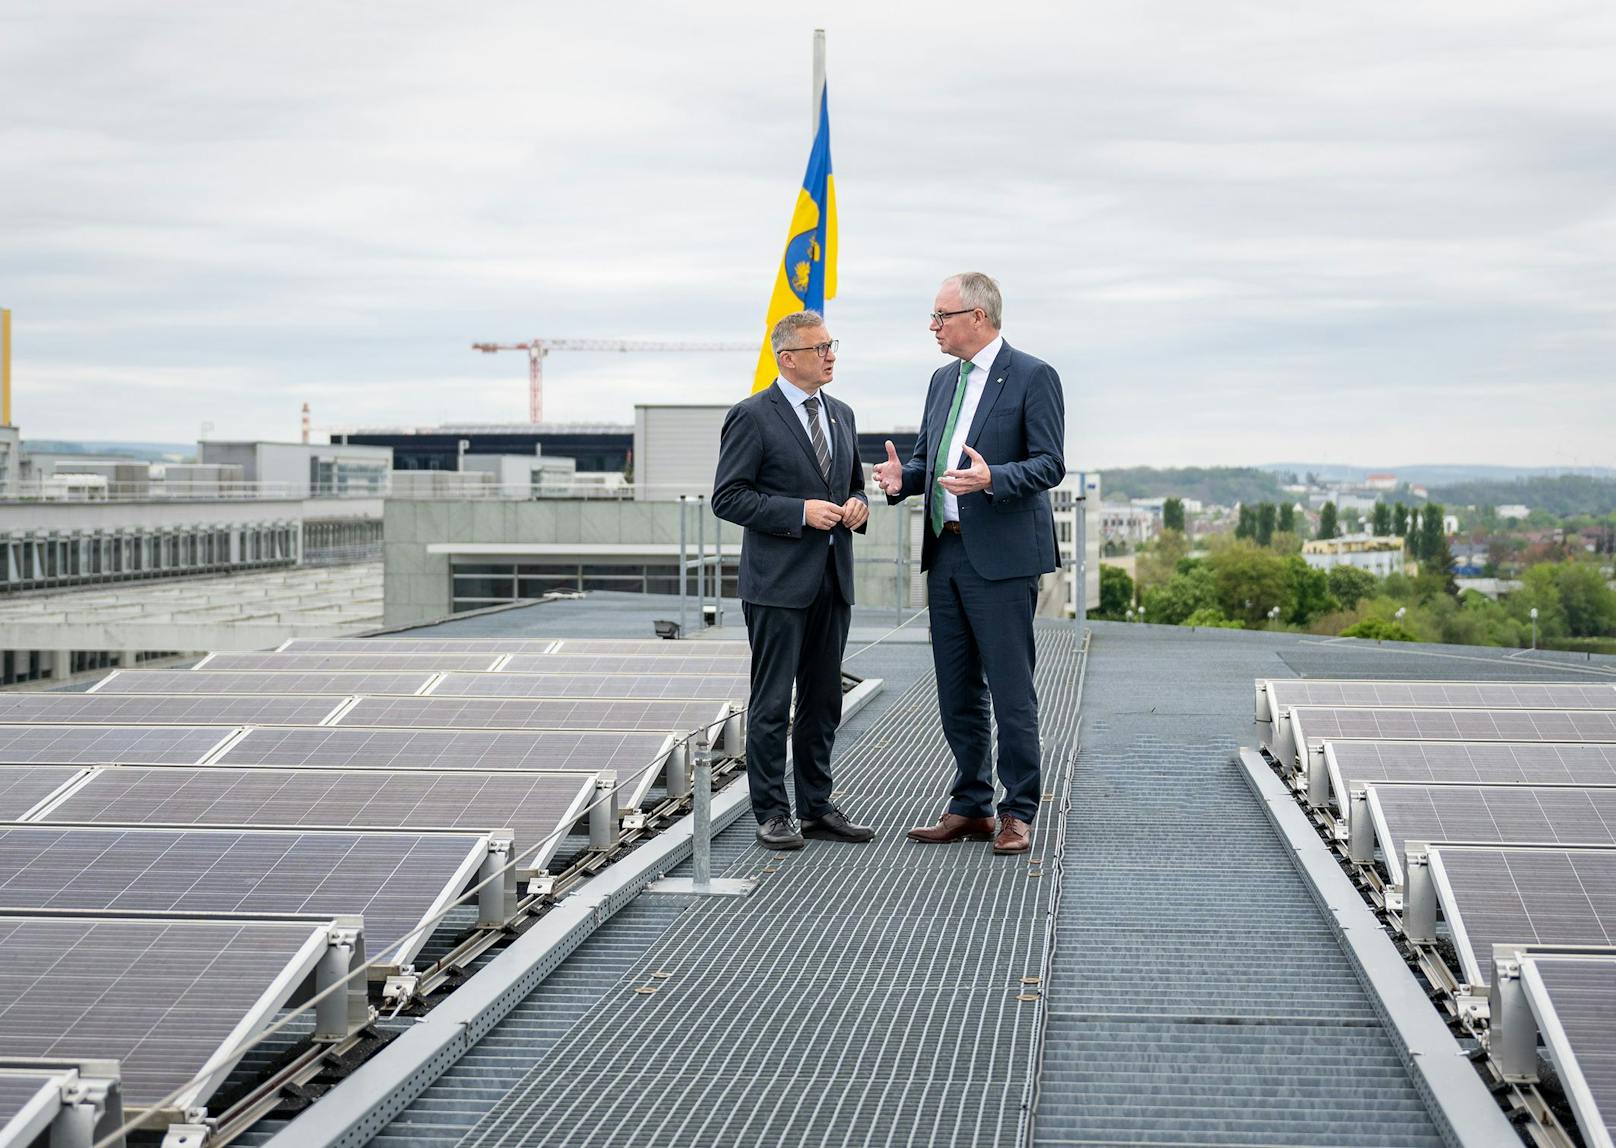 LH-Stellvertreter Stephan Pernkopf informierte heute, Mittwoch, gemeinsam mit Herbert Greisberger, Geschäftsführer der Energie- und Umweltagentur NÖ, und Experten des Landes NÖ über den Ausbau der Erneuerbaren Energie.